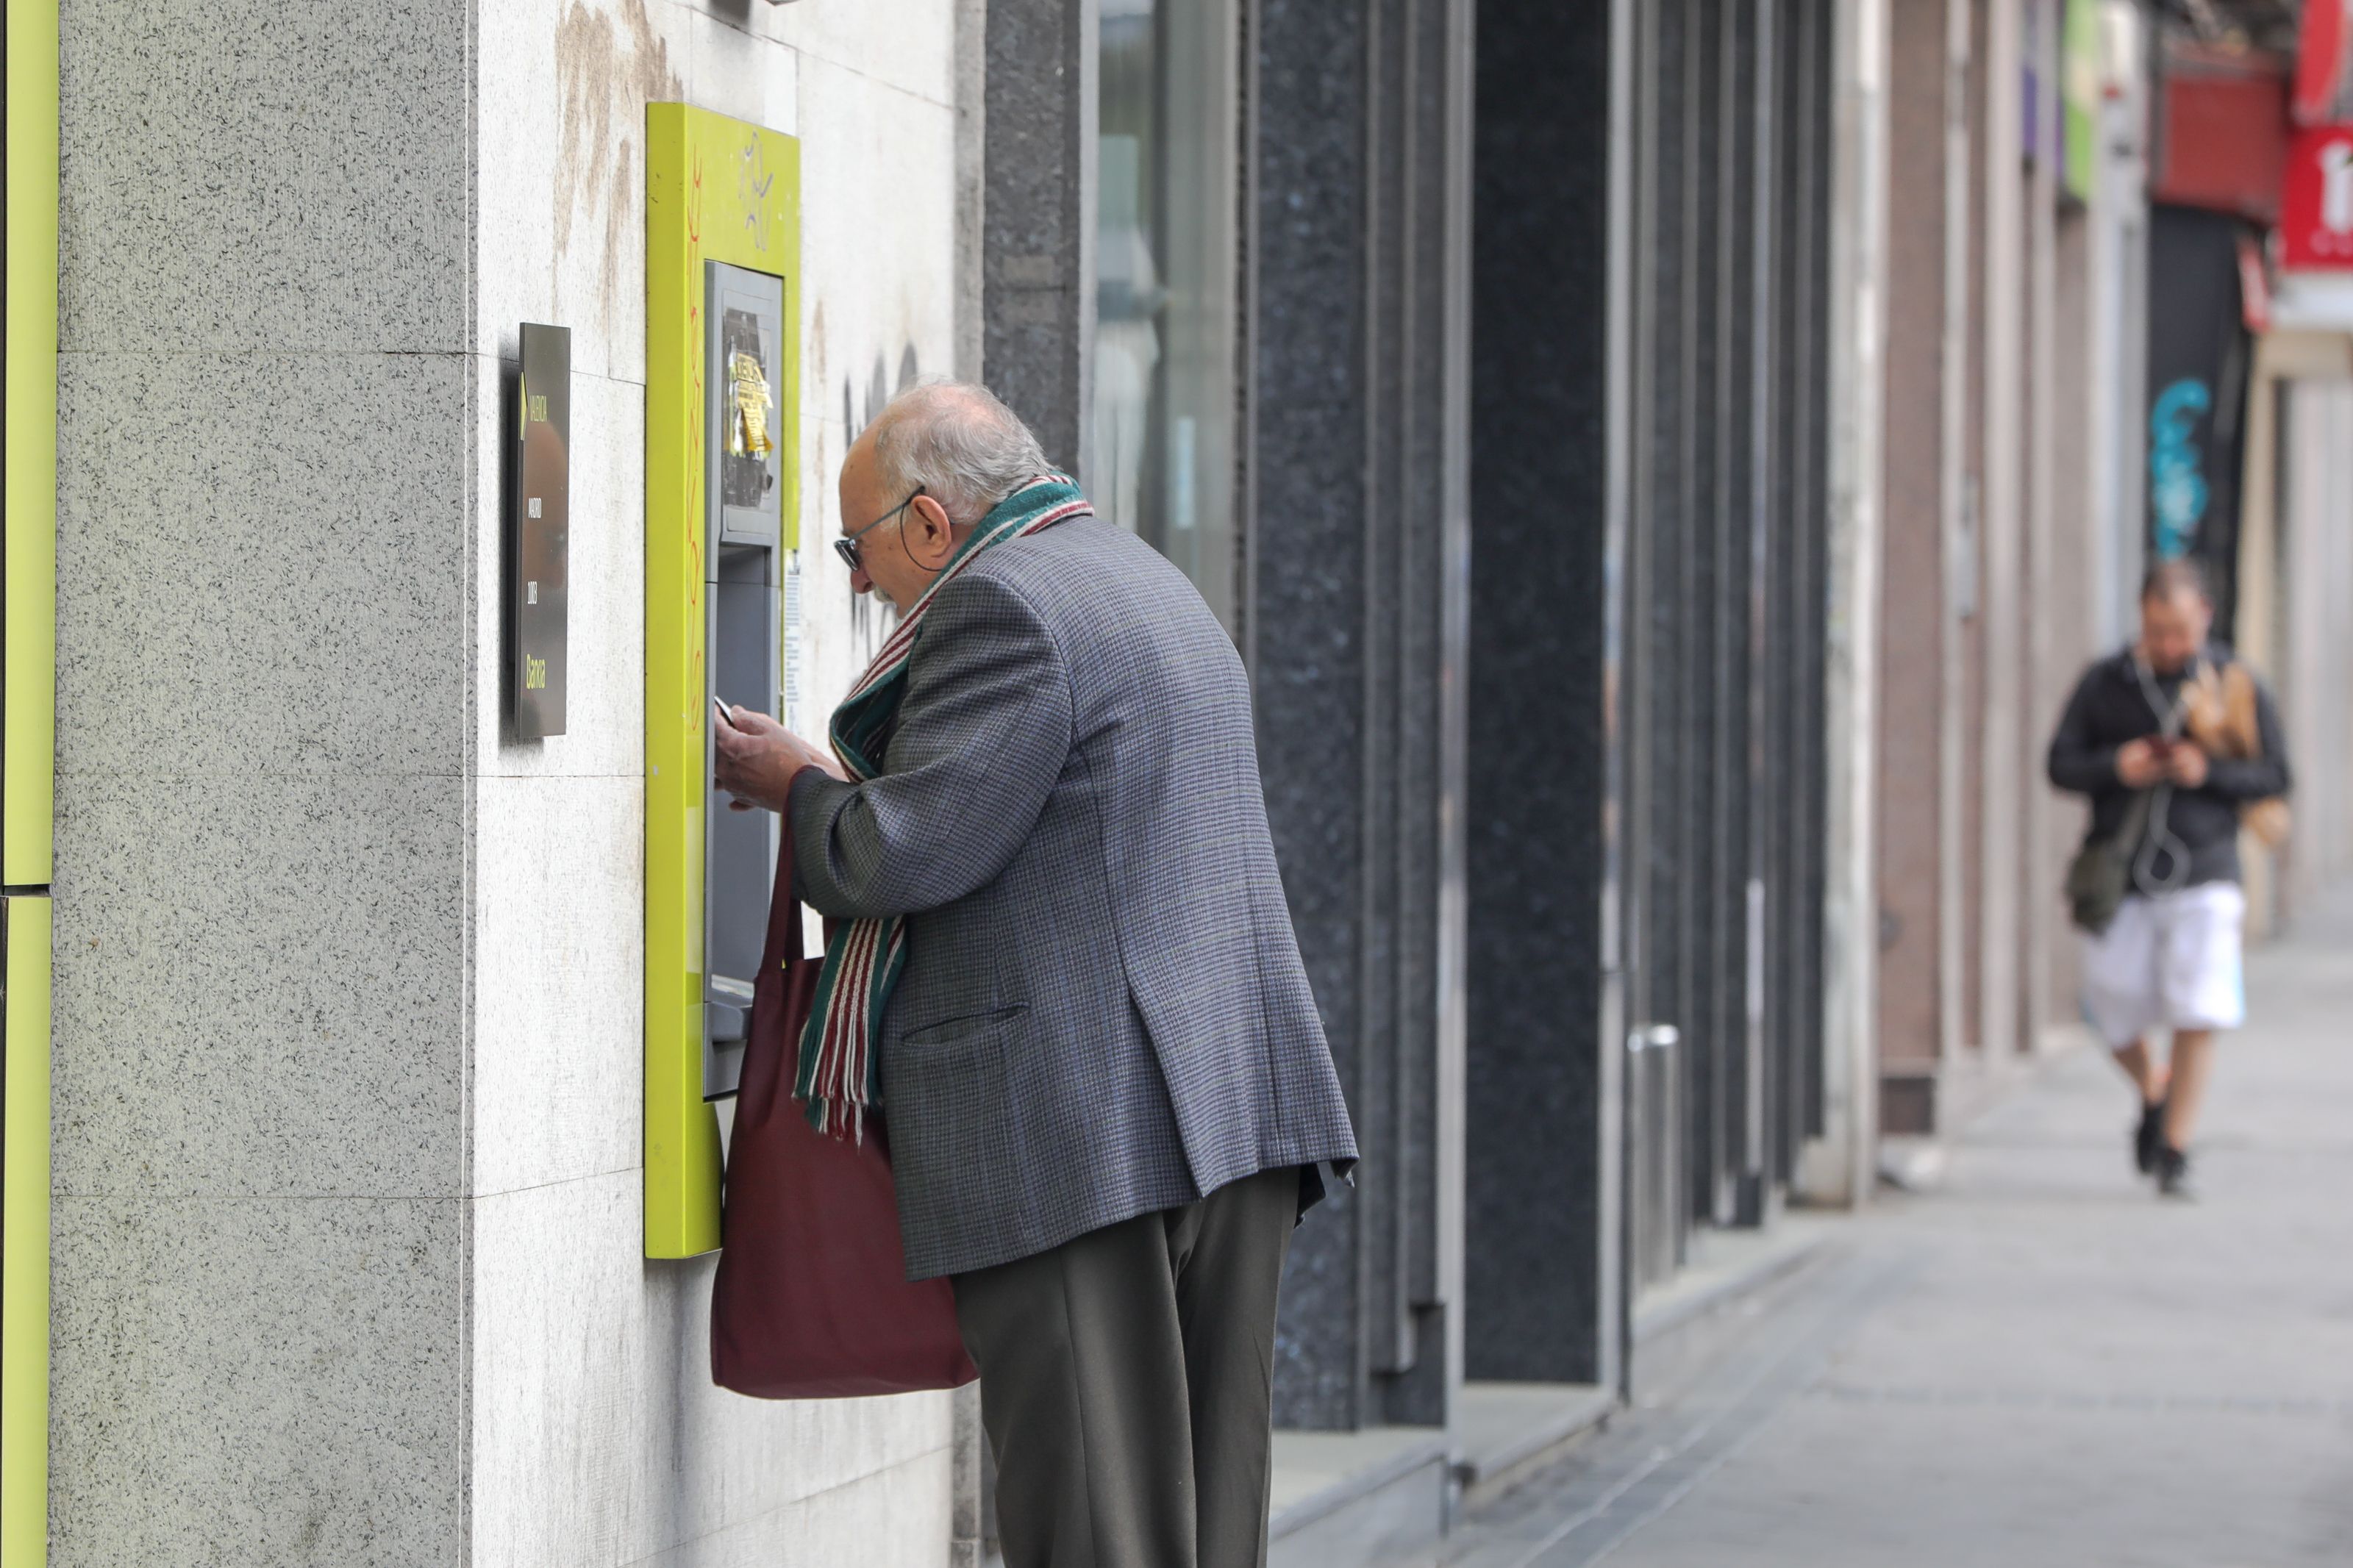 Calviño sobre las medidas de la banca para garantizar la inclusión financiera: "No son suficientes". Foto: Europa Press